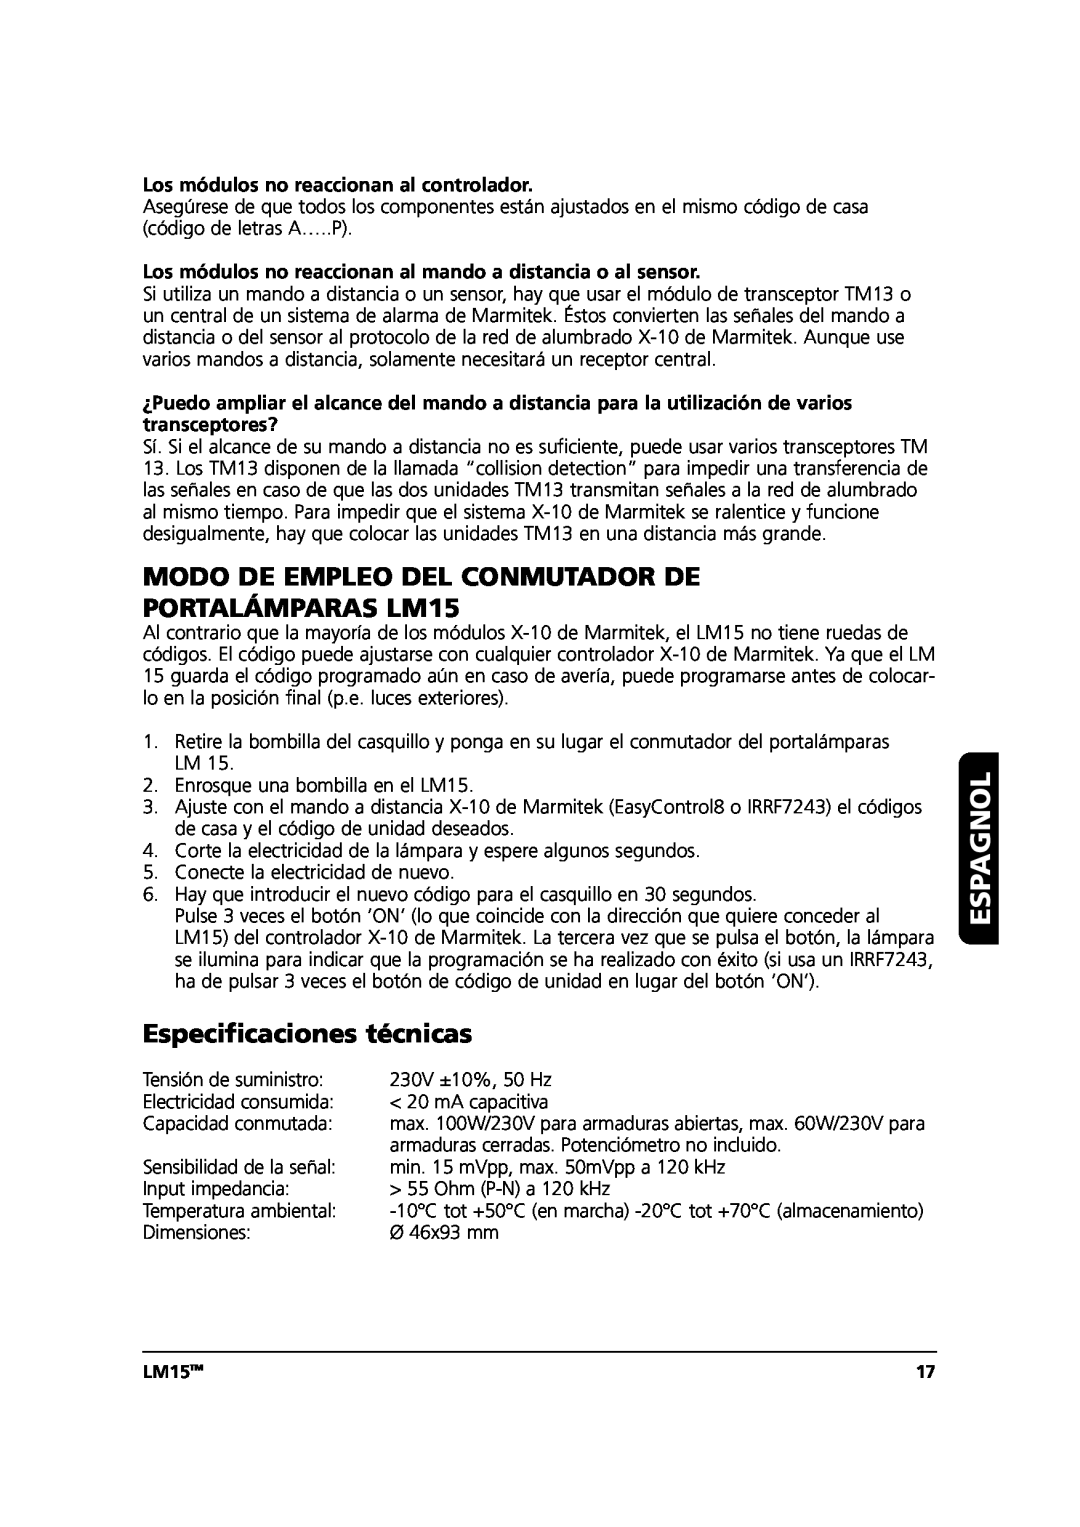 Marmitek user manual Modo De Empleo Del Conmutador De, PORTALÁMPARAS LM15, Especificaciones técnicas, Espagnol, LM15TM 